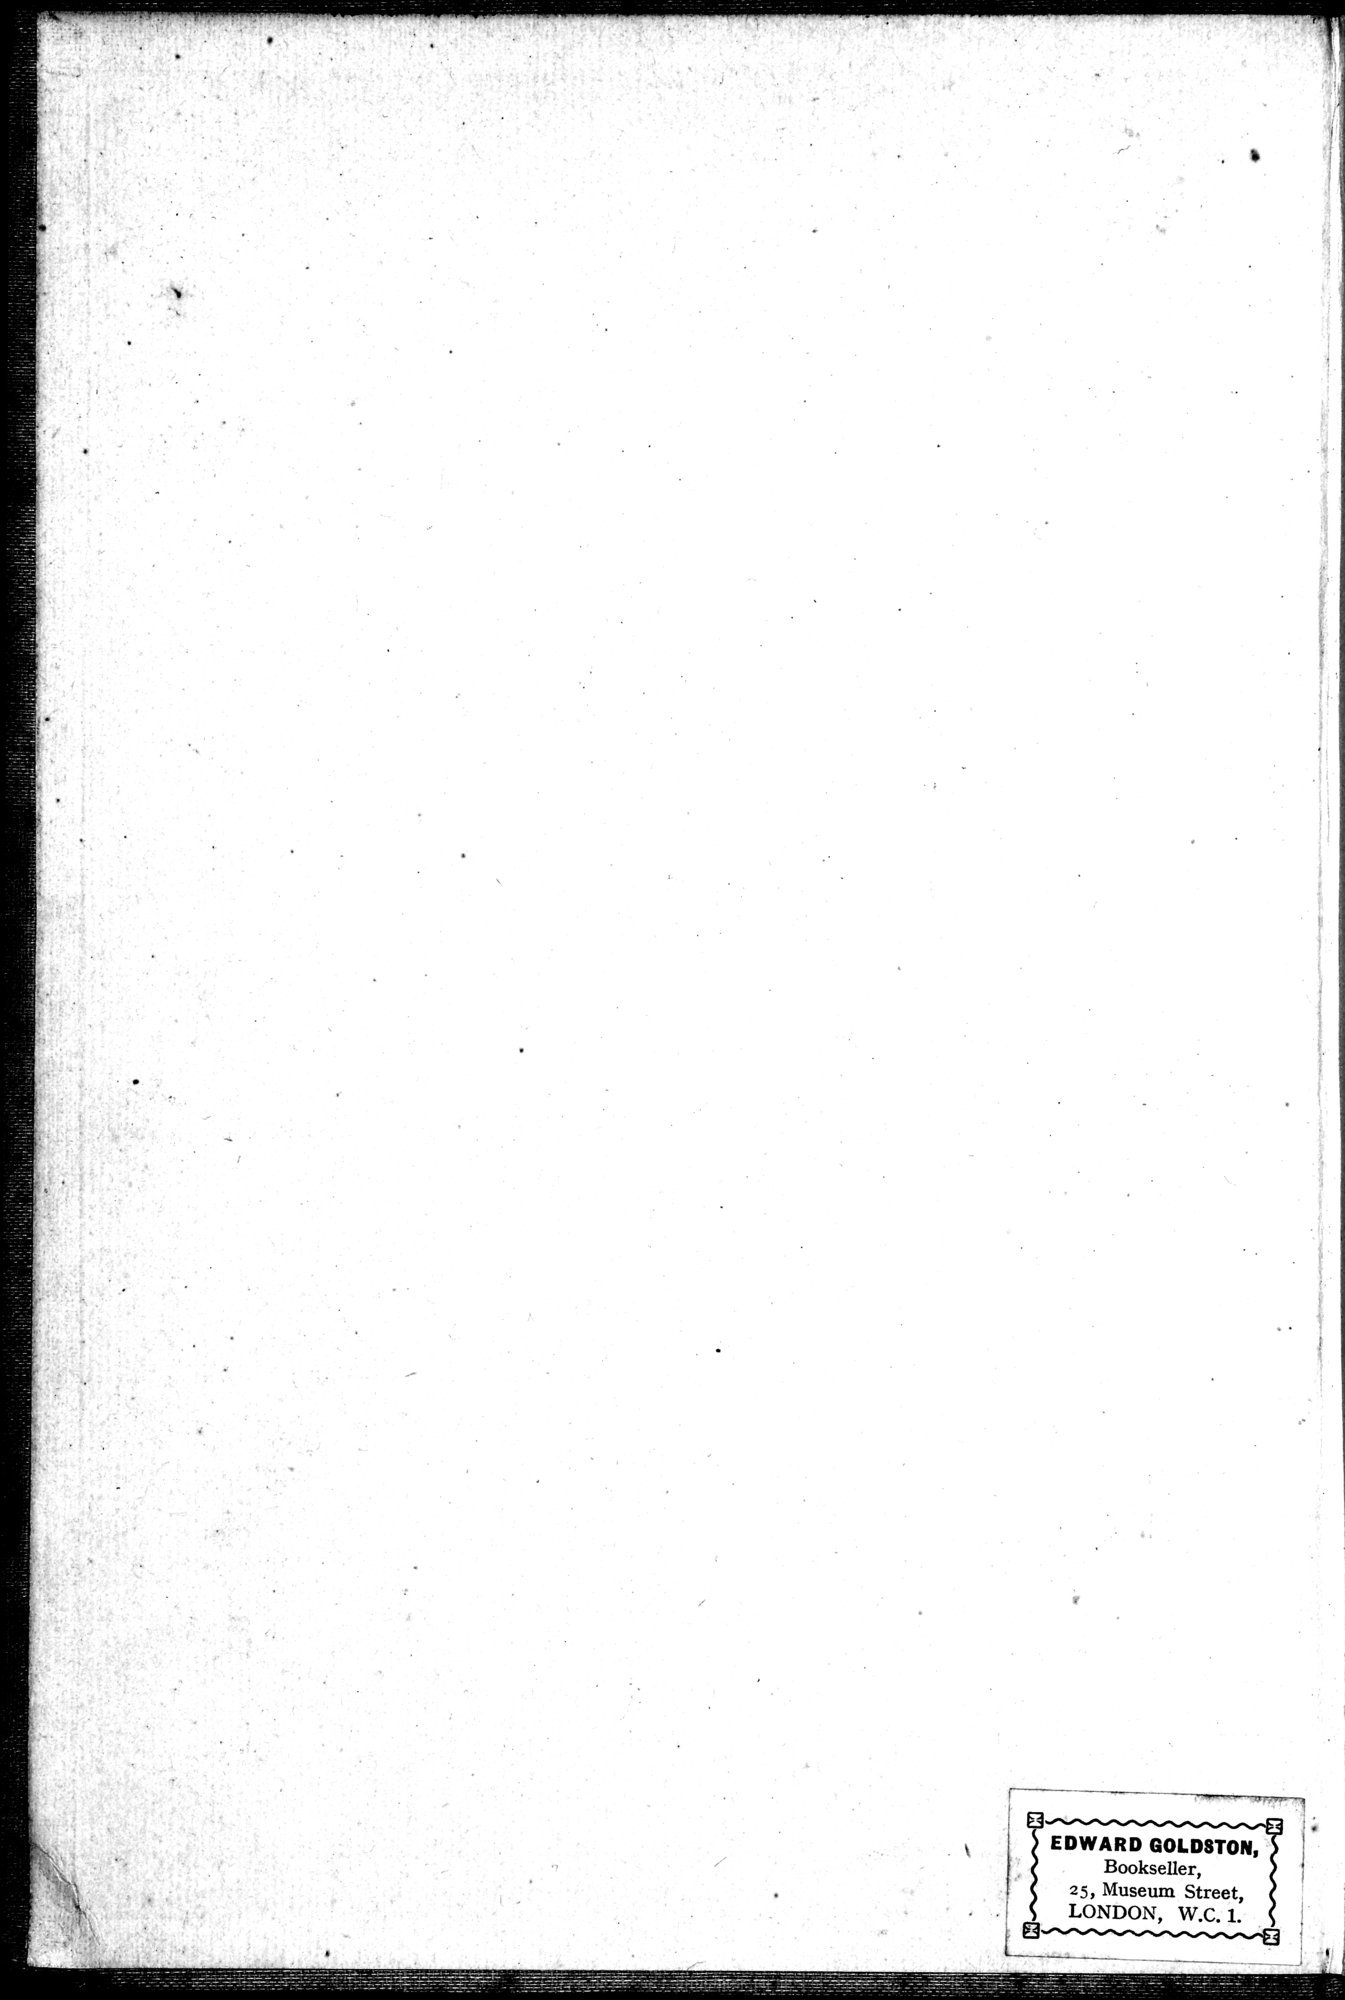 Auf Hellas Spuren in Ostturkistan : vol.1 / Page 2 (Grayscale High Resolution Image)